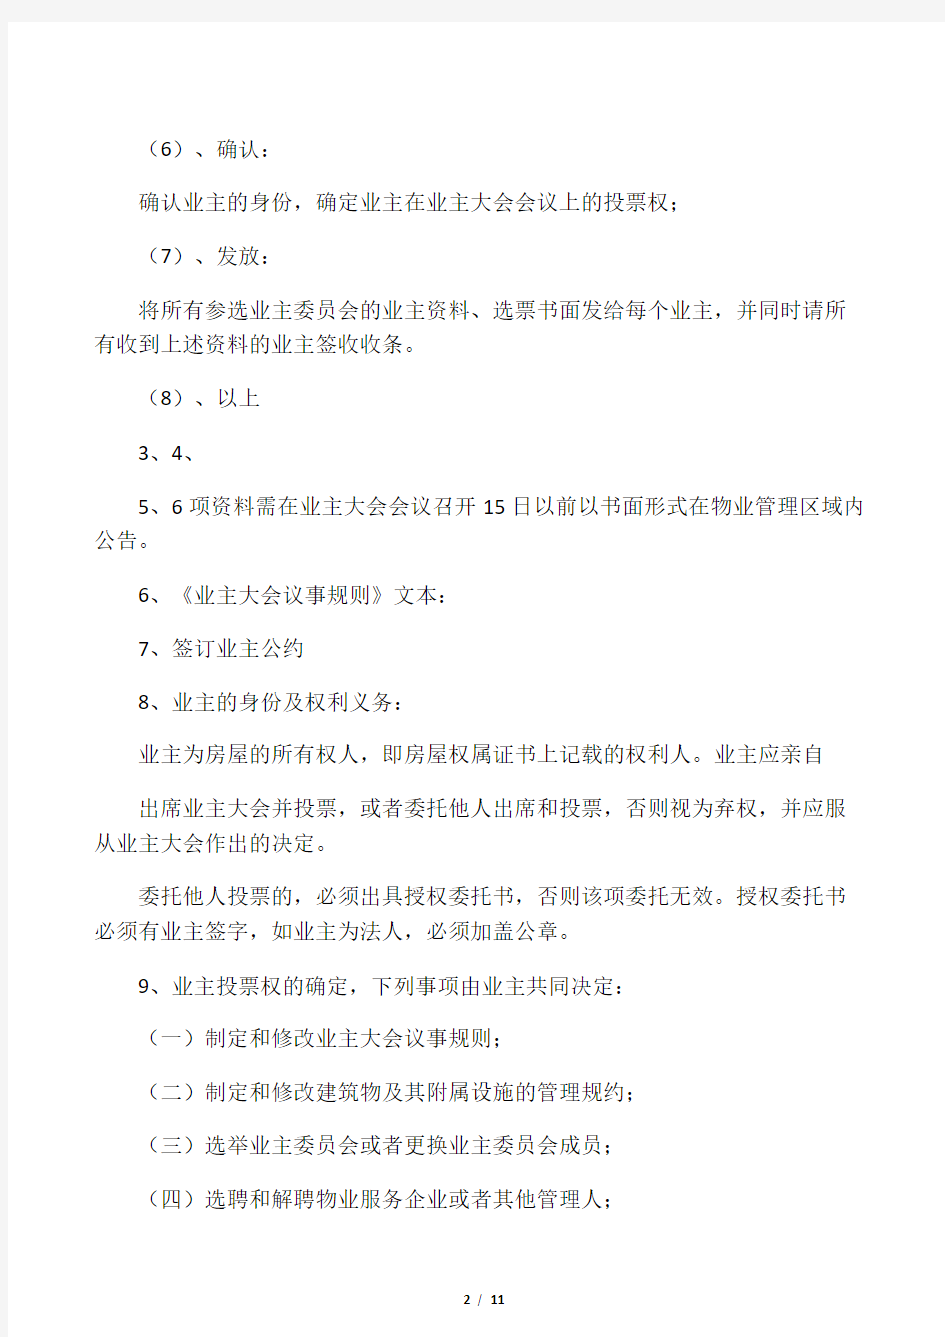 00 上海业主大会及业委会成立的基本流程